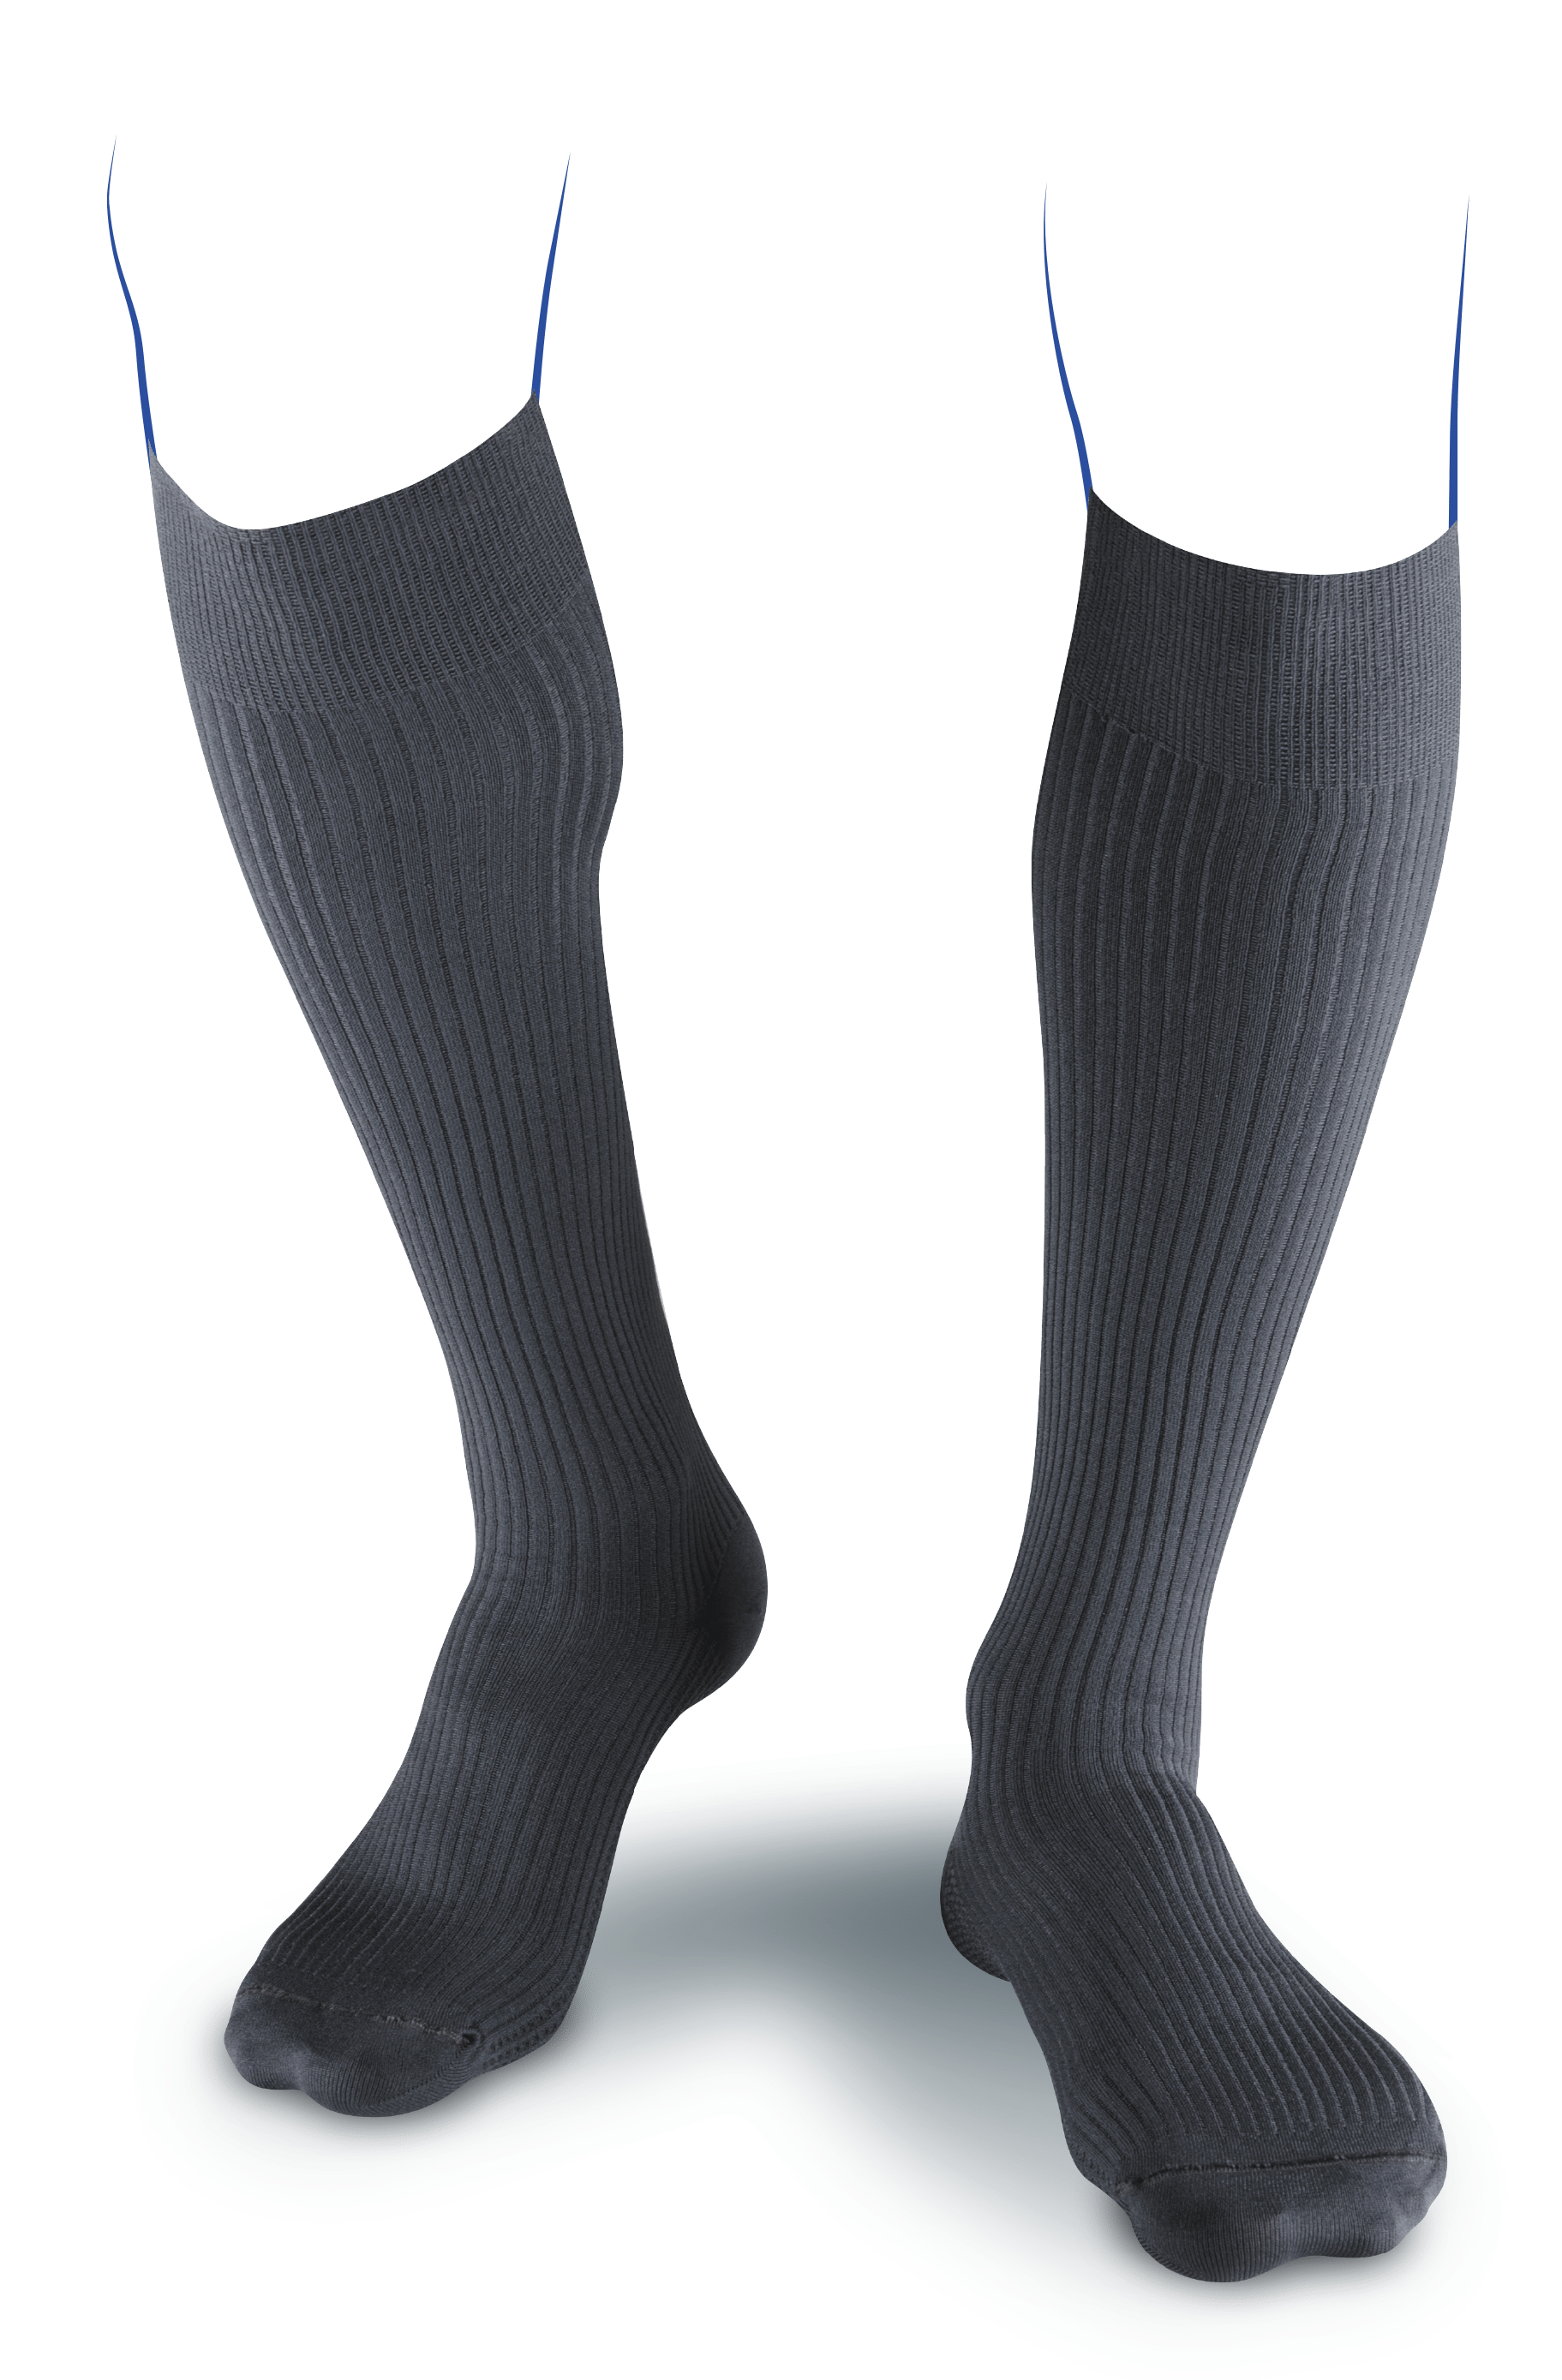 Chaussettes de contention pieds ouverts homme Thuasne Venoflex Classe 3